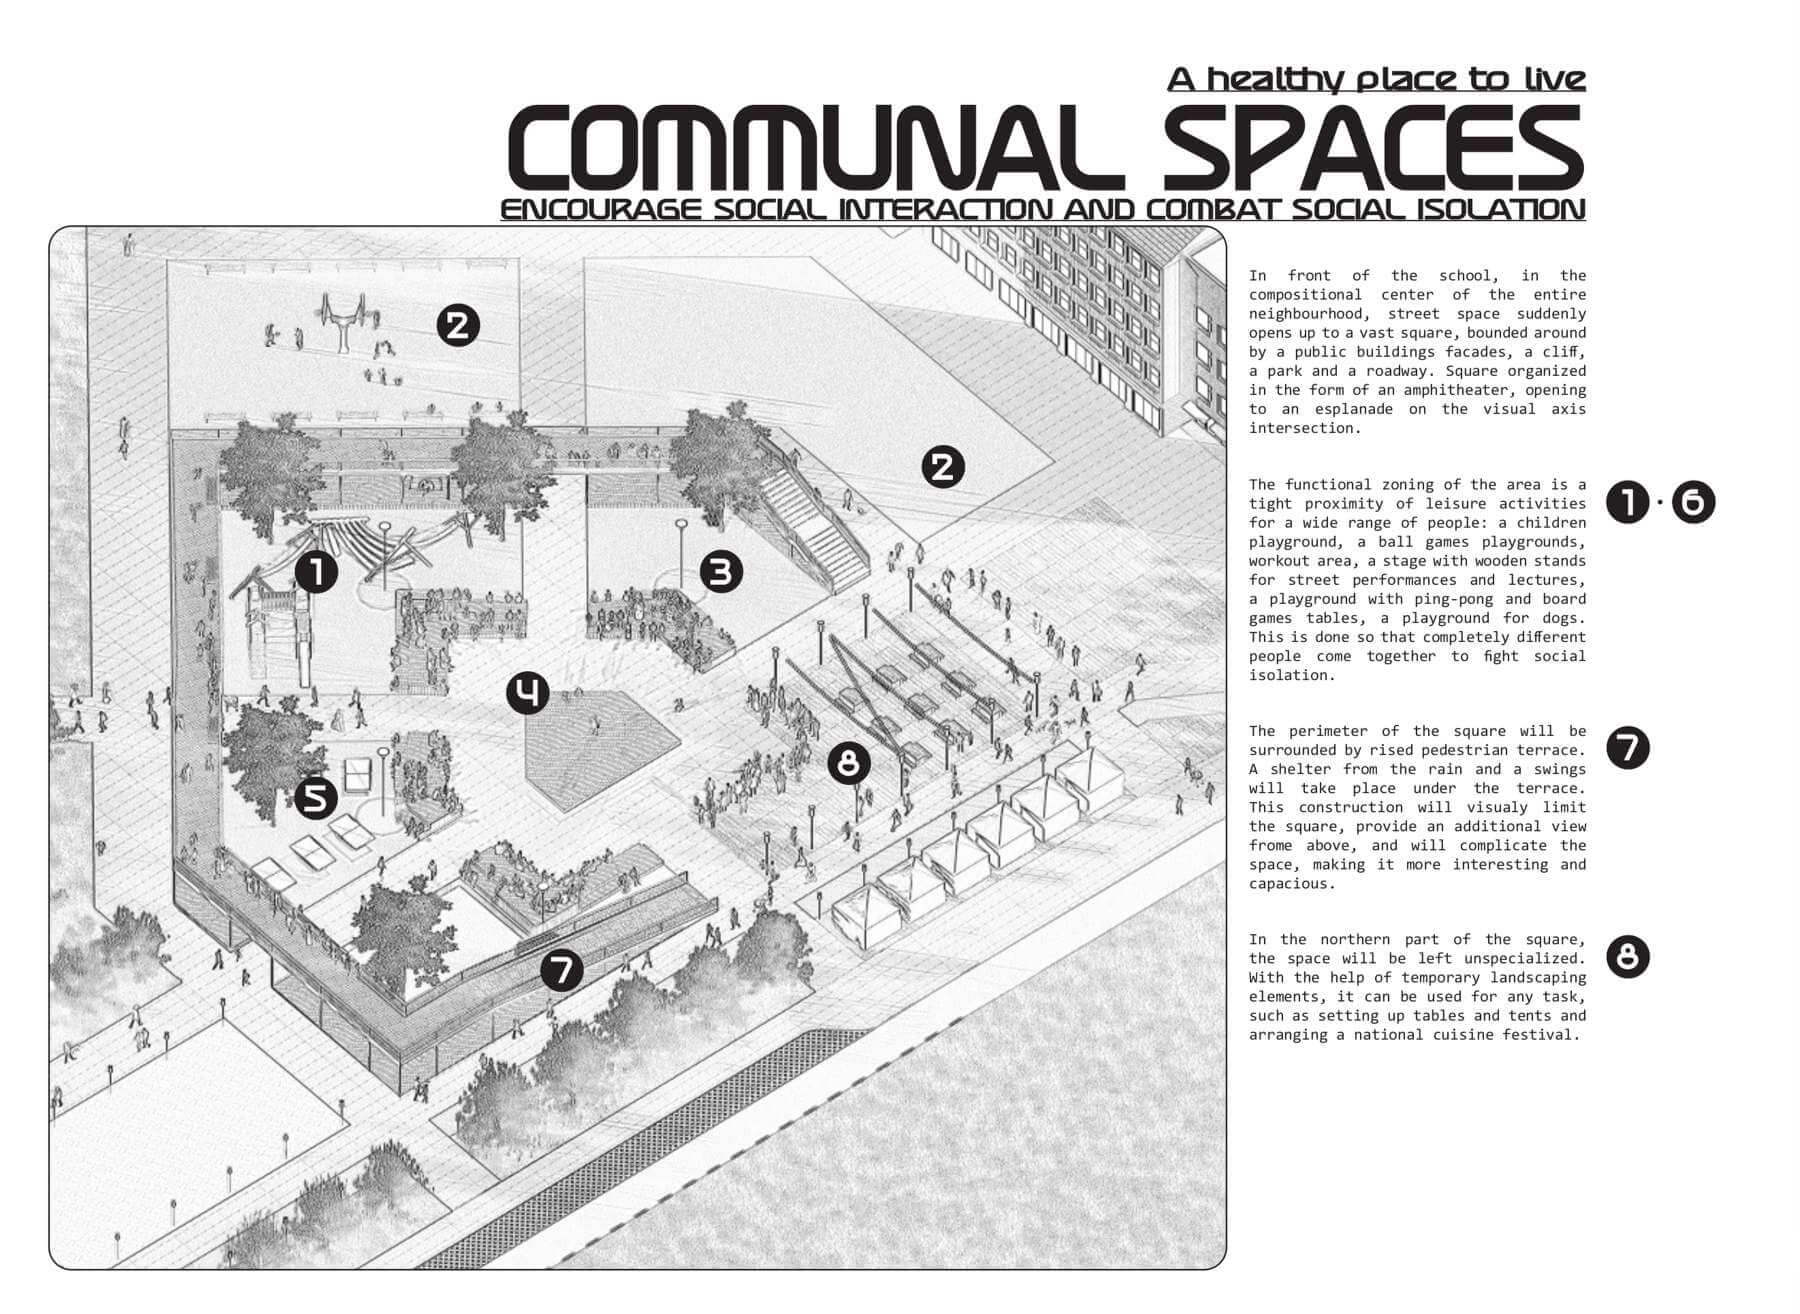 Communal spaces